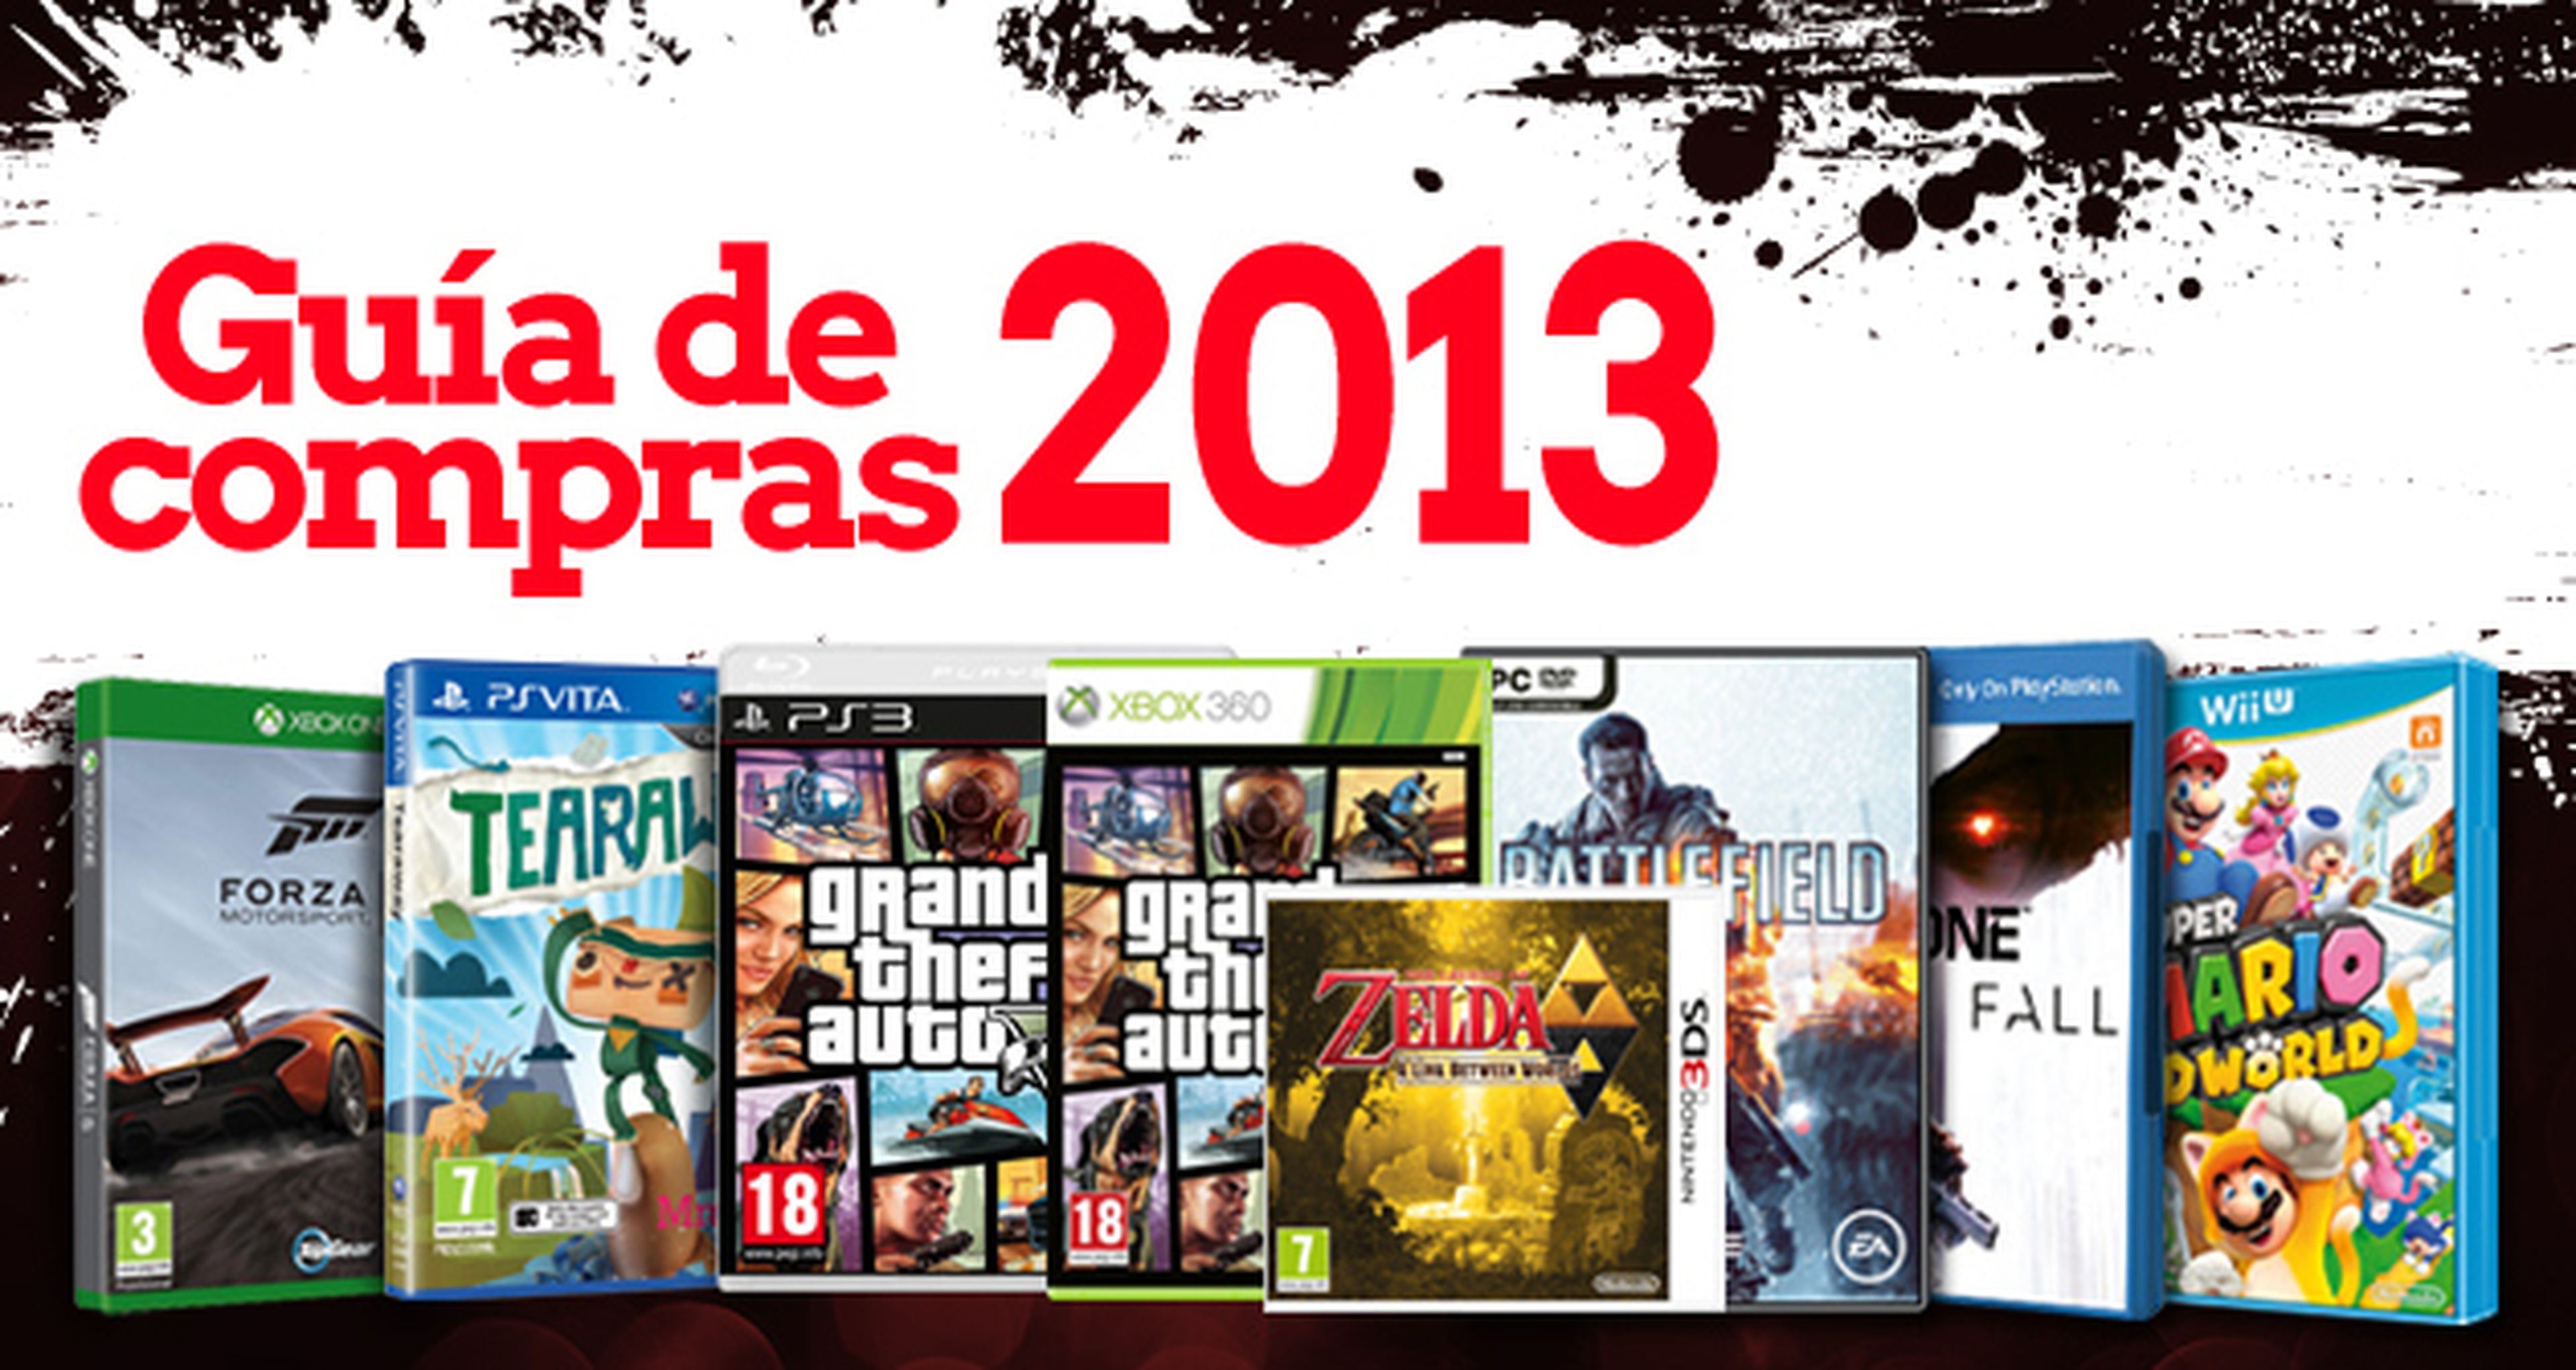 Guia de compras Videojuegos 2013